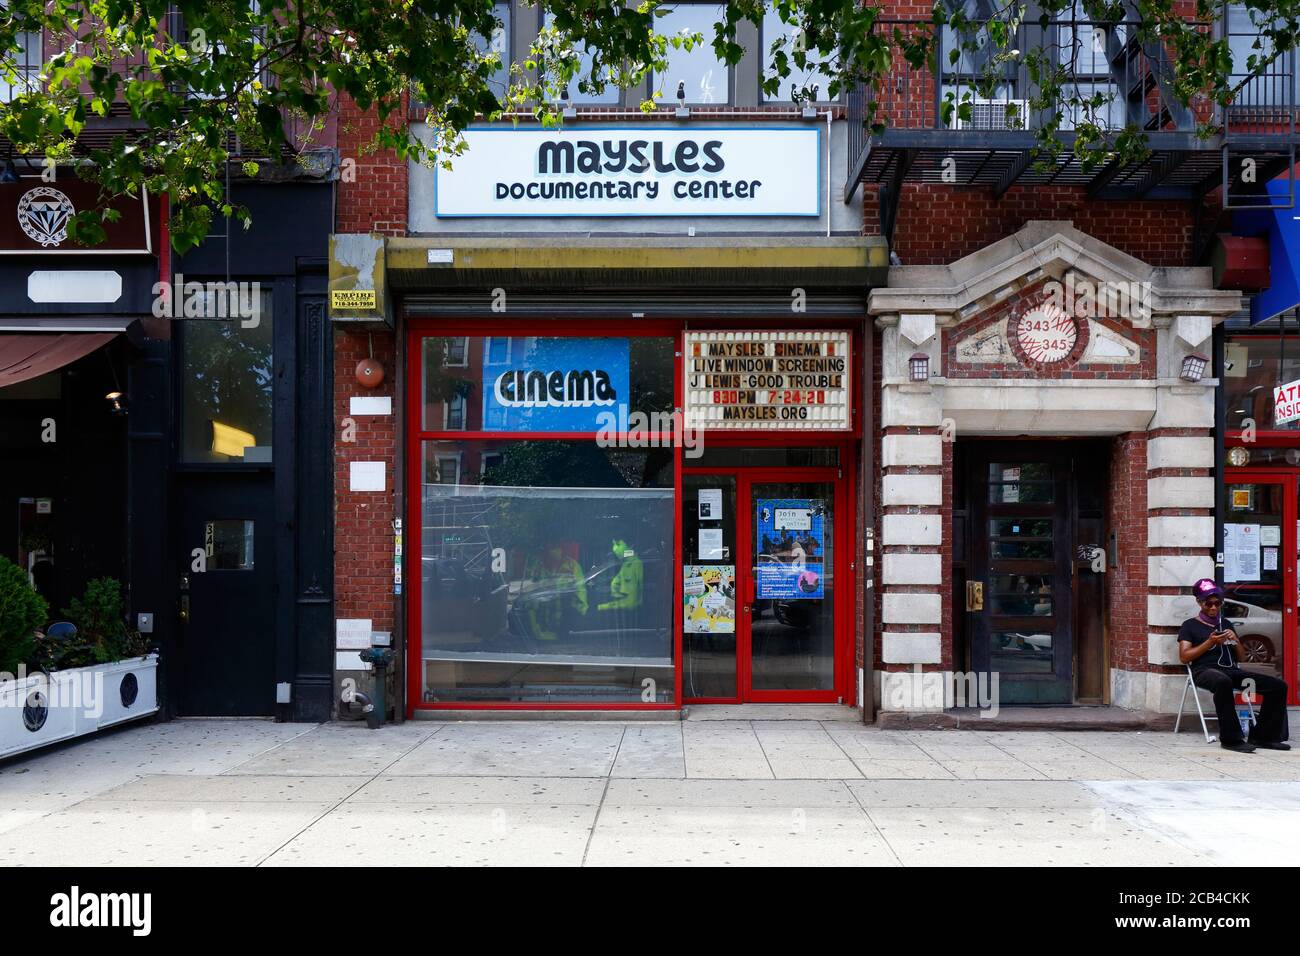 Maysles Documentary Center, 343 Malcolm X Blvd, New York, foto storefront di un'organizzazione teatrale e artistica nel quartiere di Harlem. Foto Stock